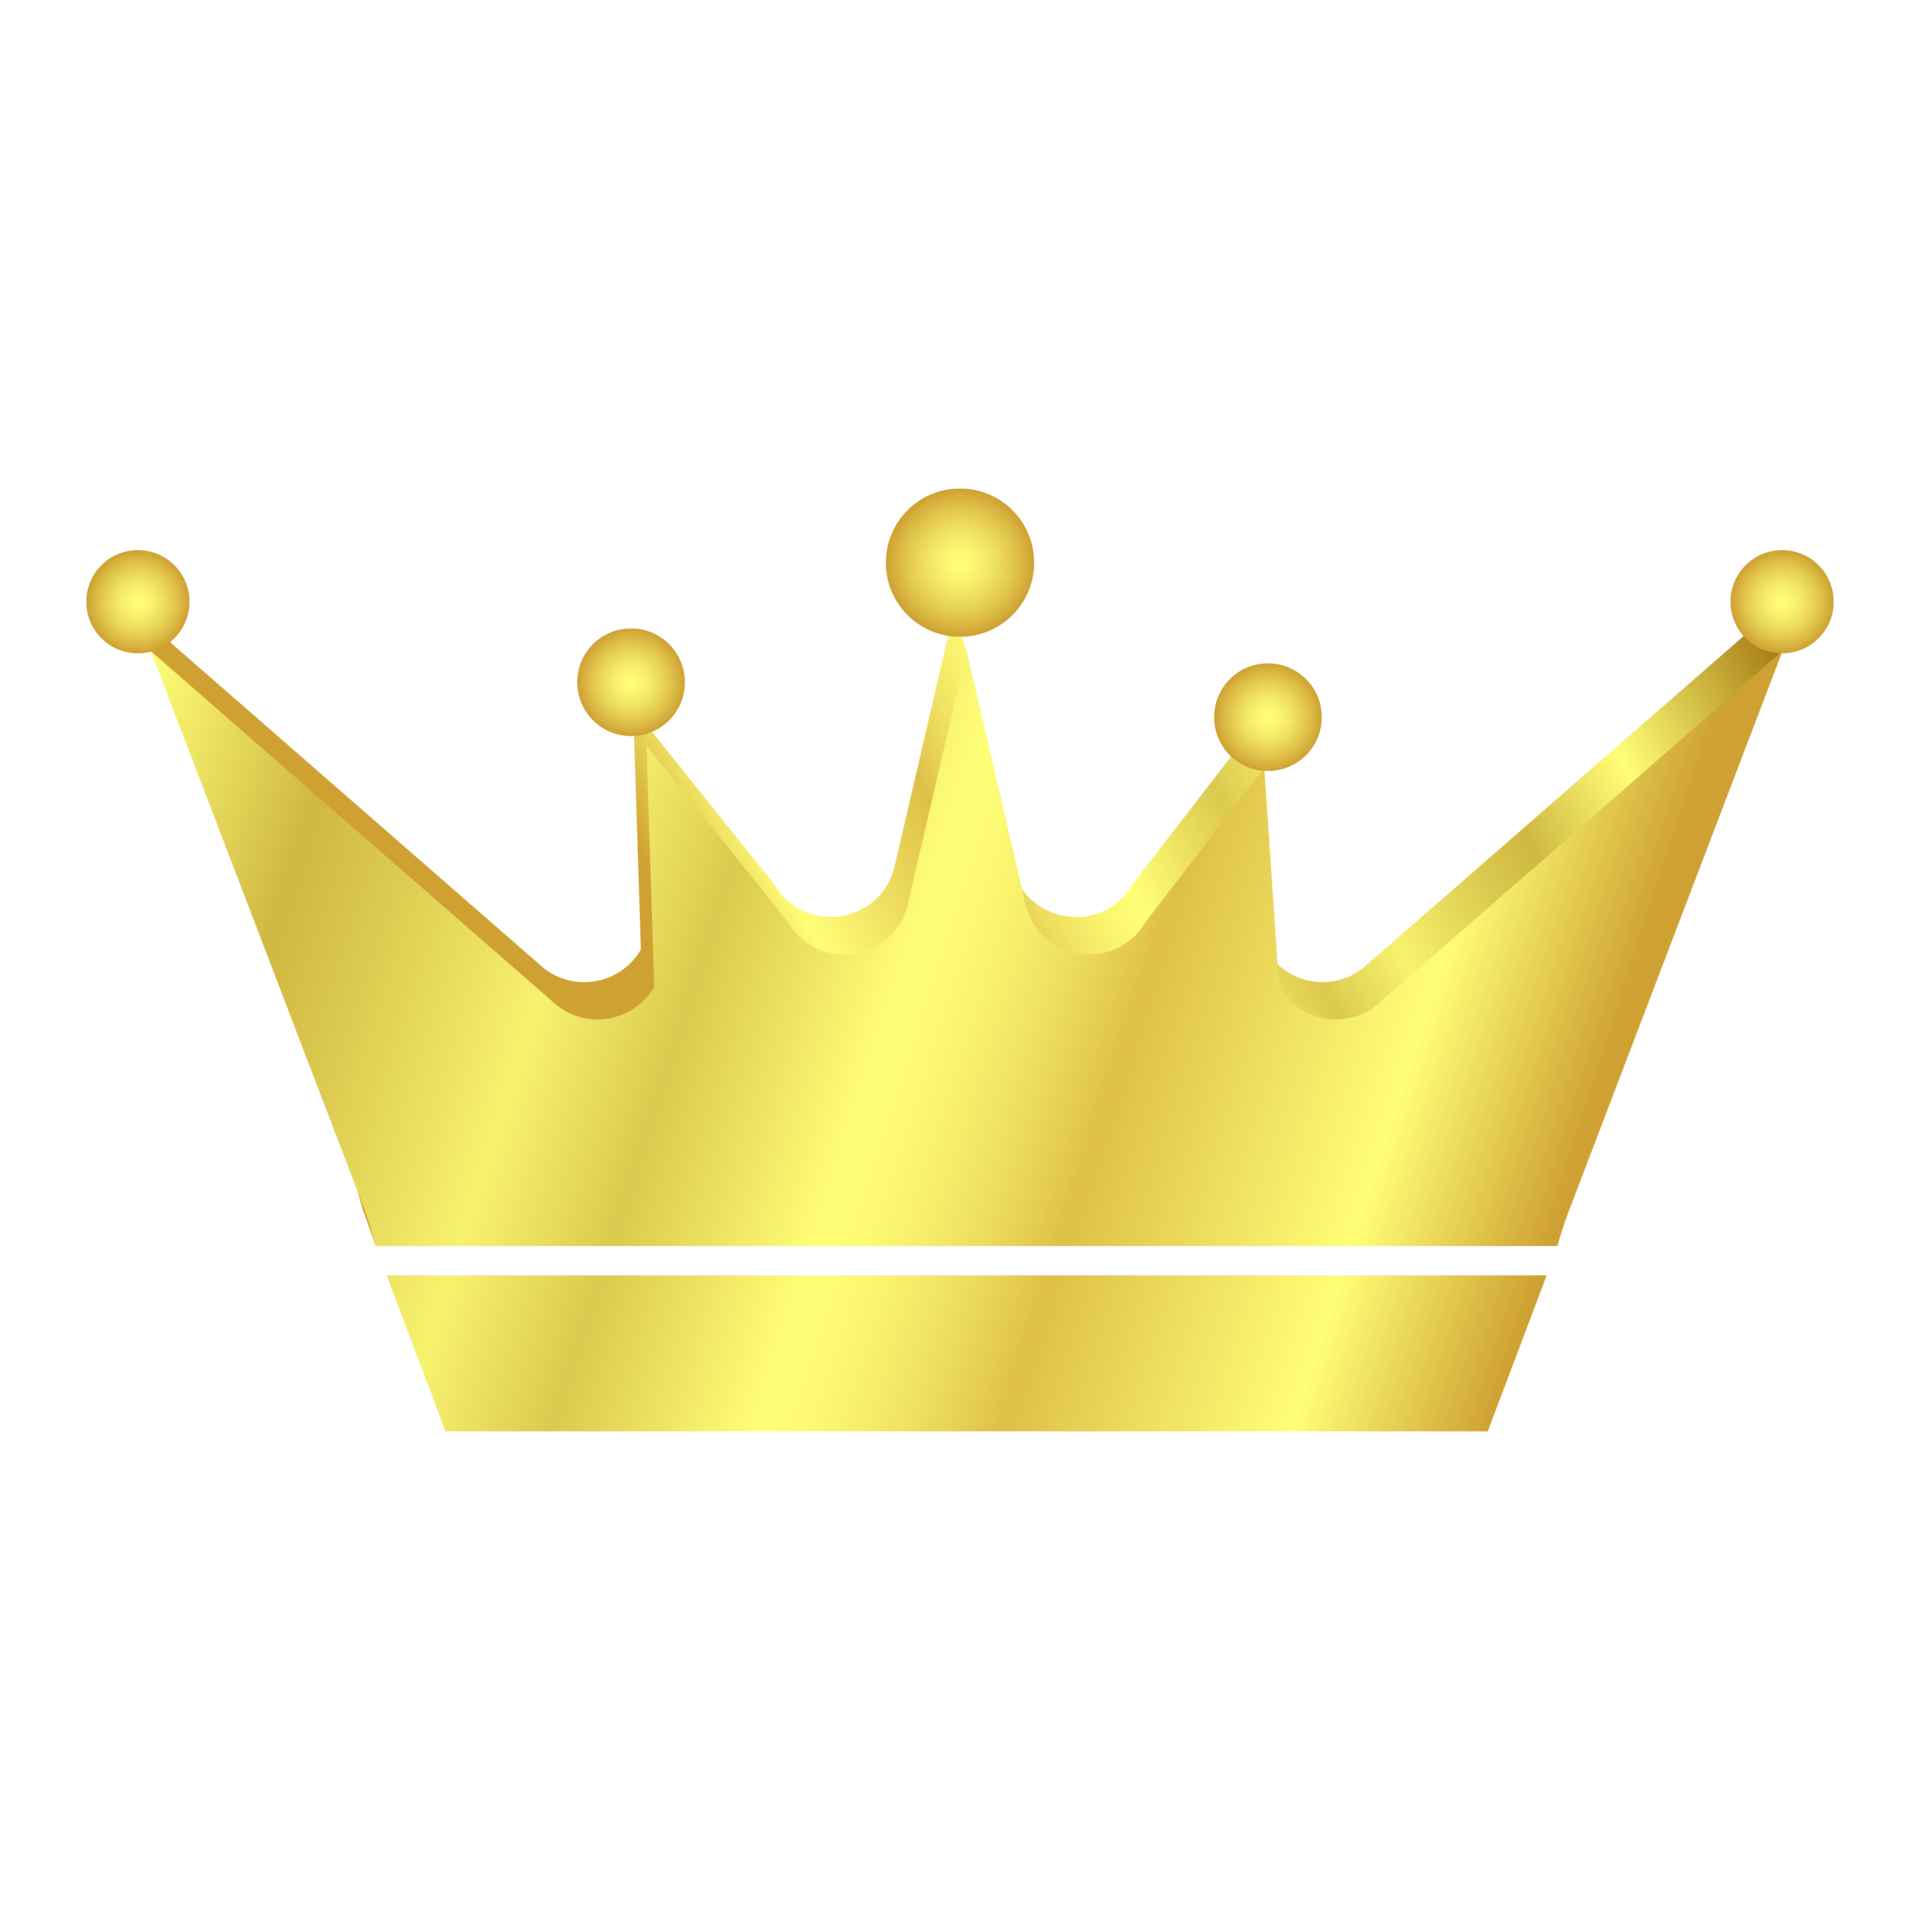 Crown Logo PNG HD Image